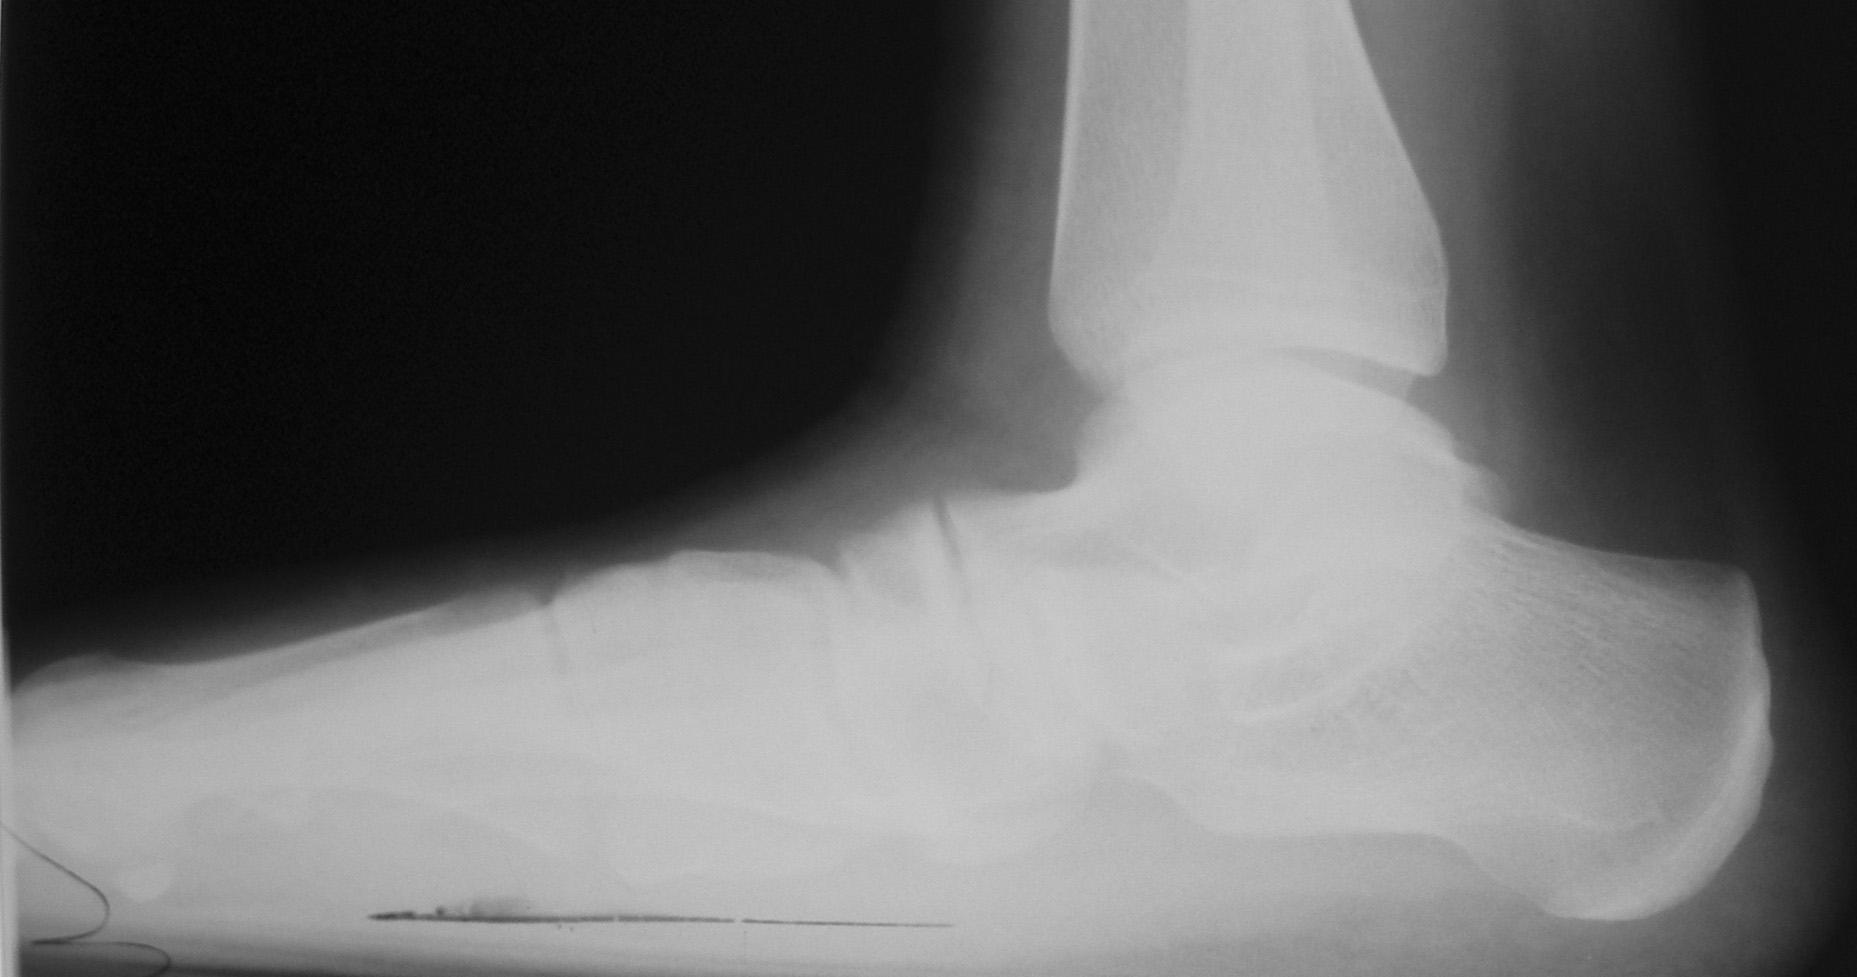 рентгеновский снимок стопы до операции